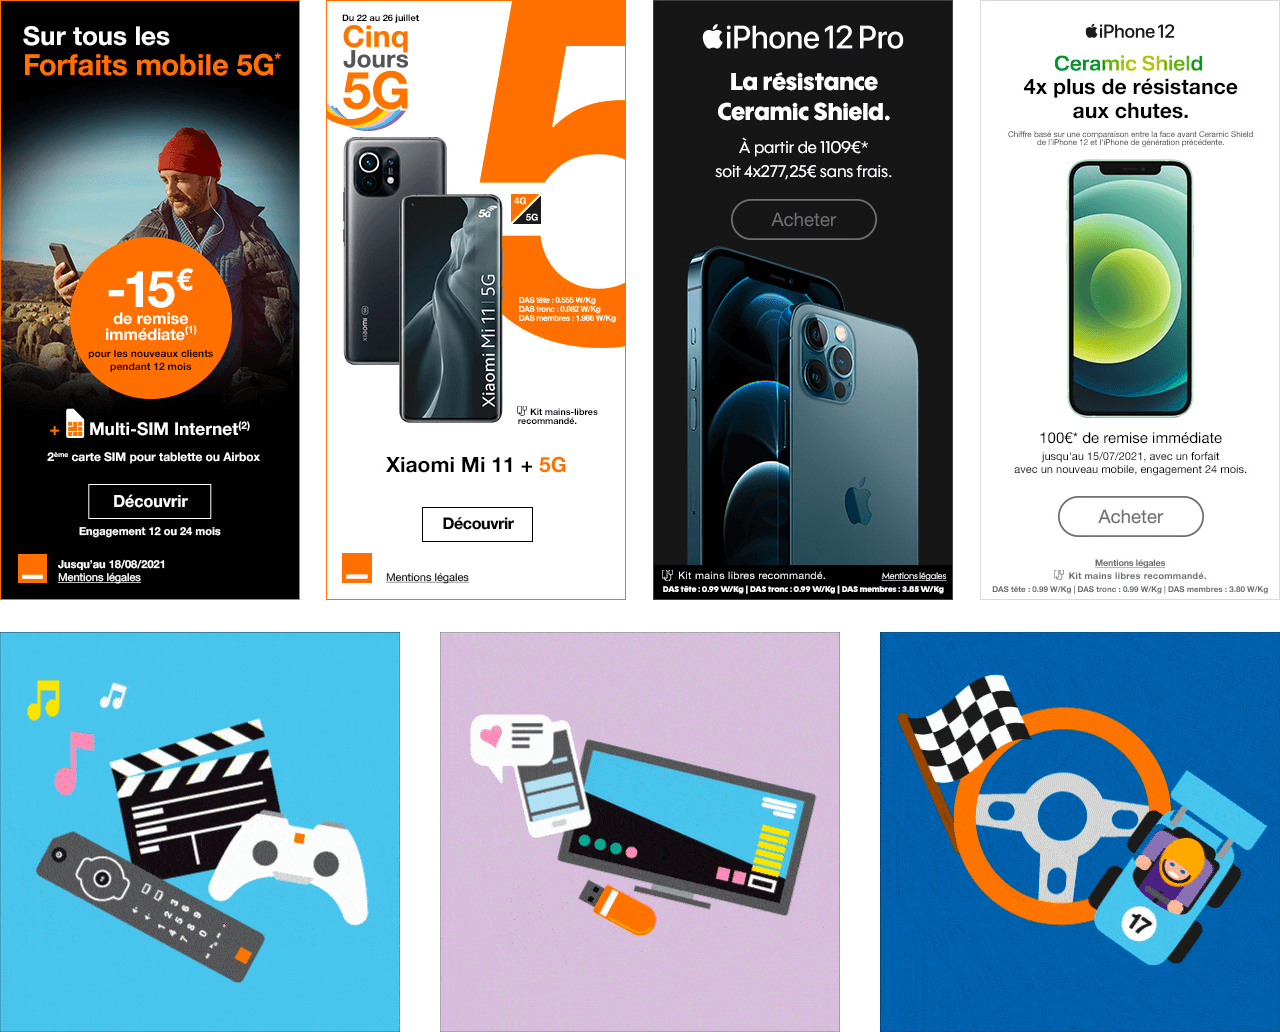 4 bannières publicitaire mettant en avant les offres de l'opérateur Orange
En dessous : 3 images représentant des télécommandes, des manettes de jeux vidéos, des smartphones et une voiture de sport